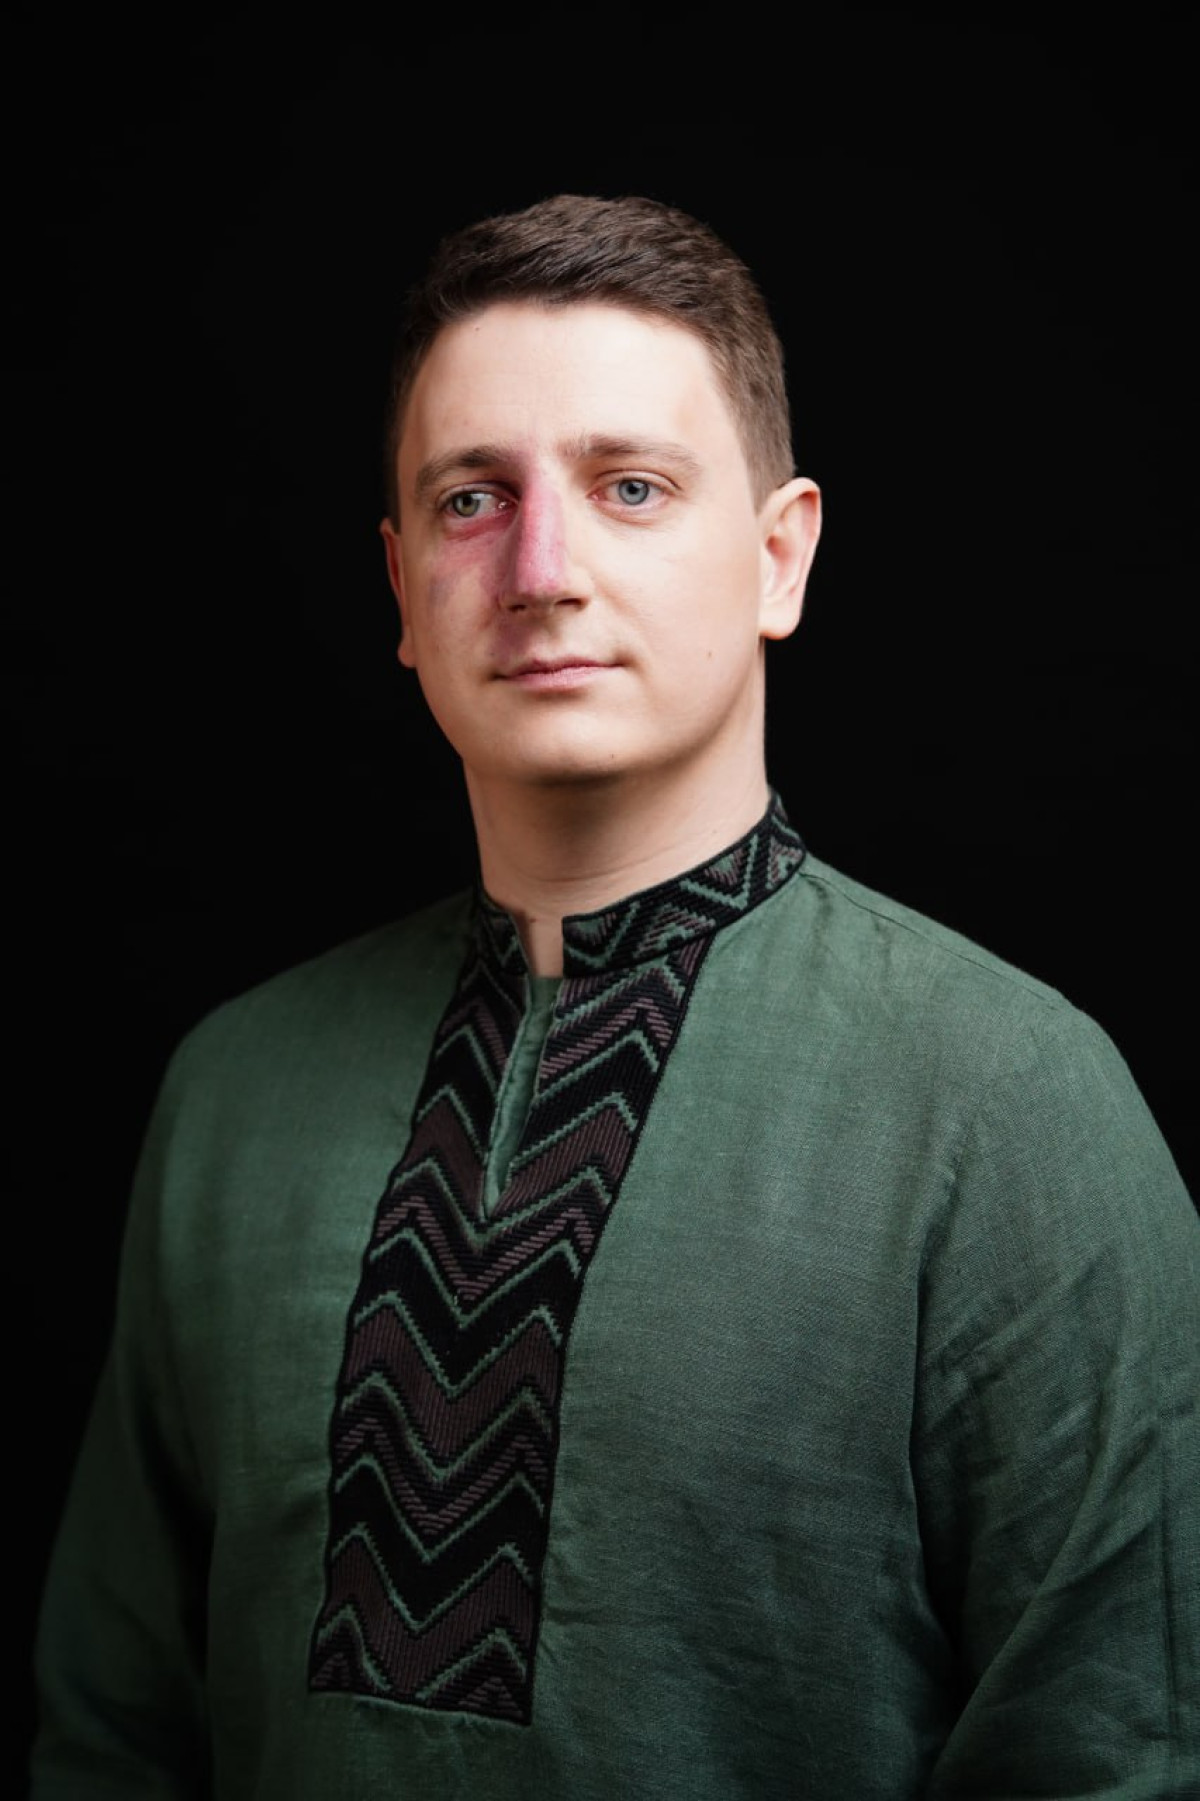 Олексій Ніщик стане спікером ELLE Active Forum і розкаже, як підтримувати мотивацію до навчання під час криз1